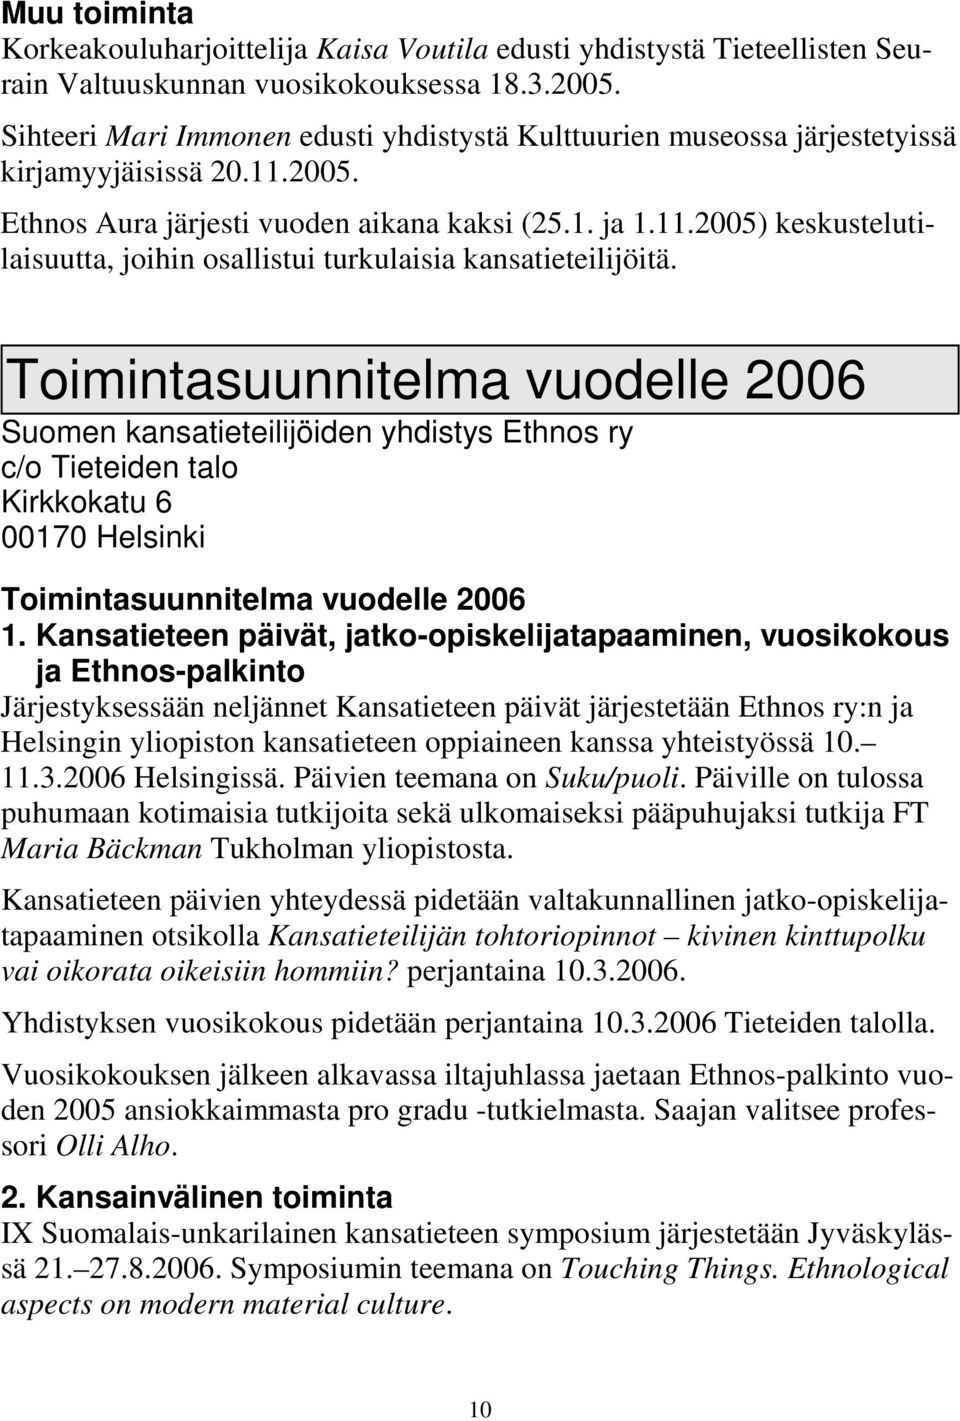 Toimintasuunnitelma vuodelle 2006 Suomen kansatieteilijöiden yhdistys Ethnos ry c/o Tieteiden talo Kirkkokatu 6 00170 Helsinki Toimintasuunnitelma vuodelle 2006 1.